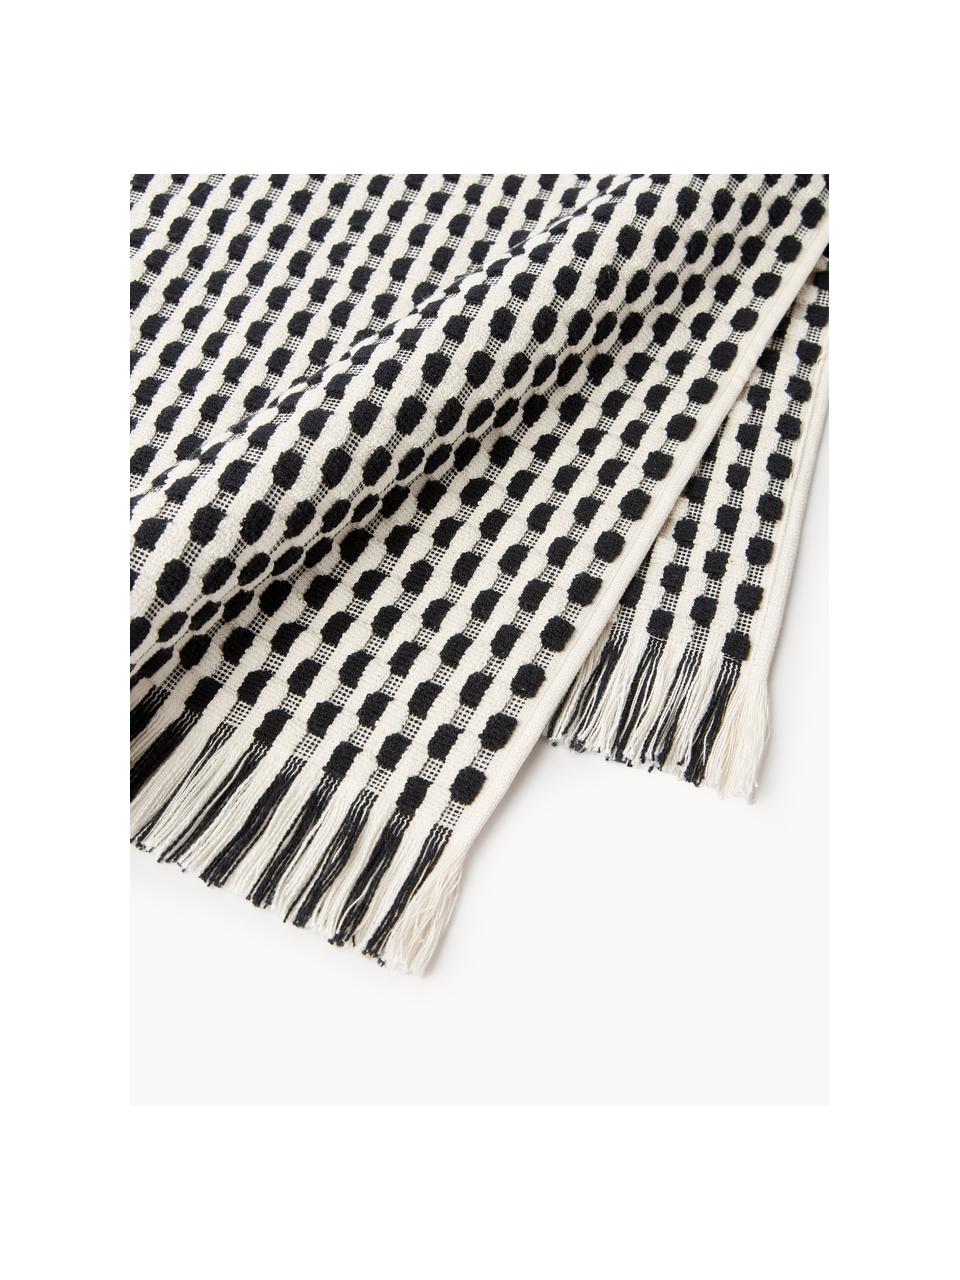 Handdoekenset Juniper met hoog-laag structuur, in verschillende setgroottes, Gebroken wit, zwart, Set van 3 (gastendoekje, handdoekje en douchedoekje)